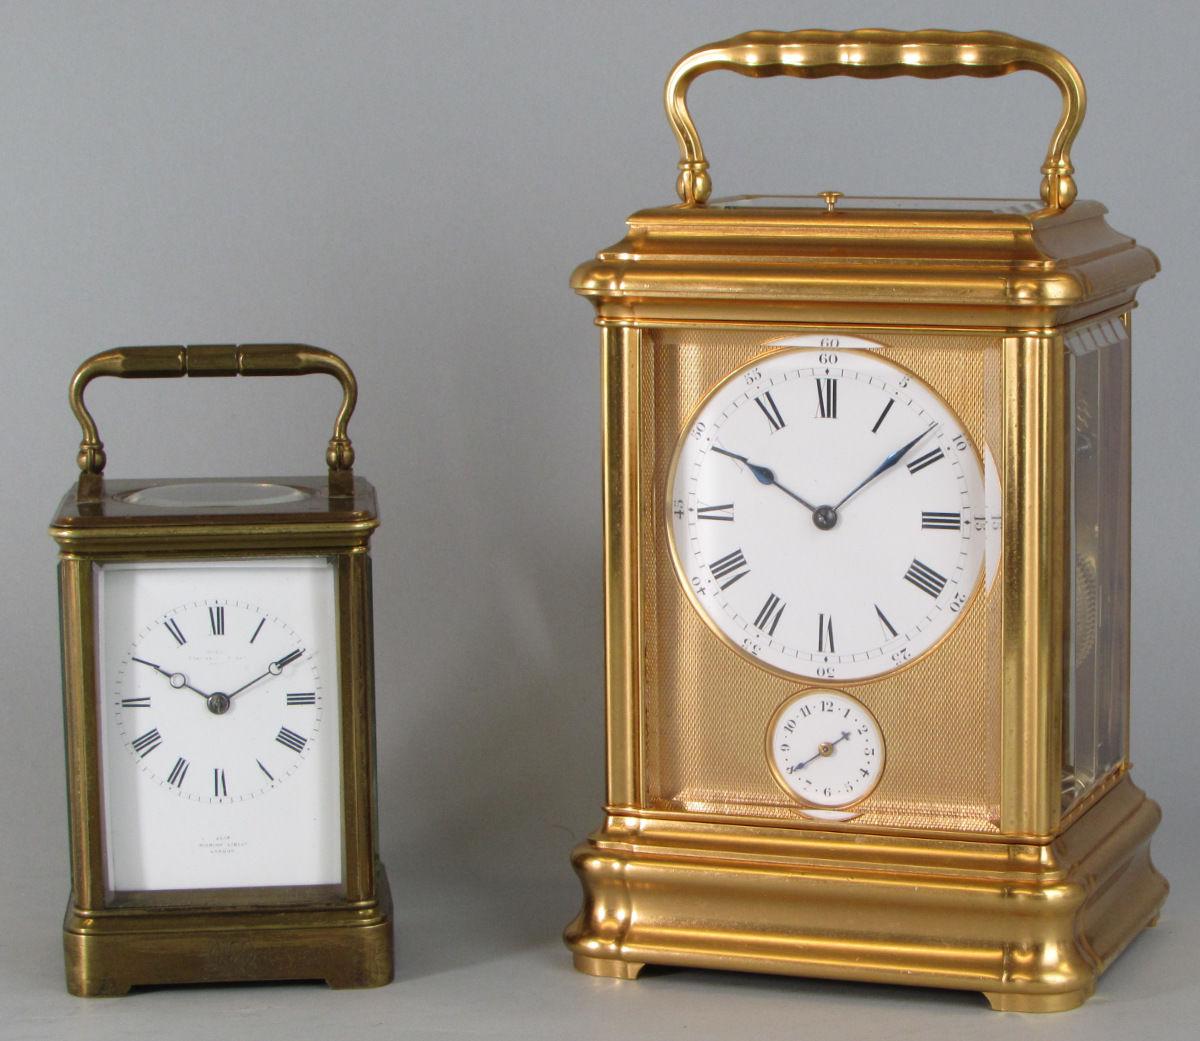 Drocourt Giant Grande-sonnerie carriage clock comparison